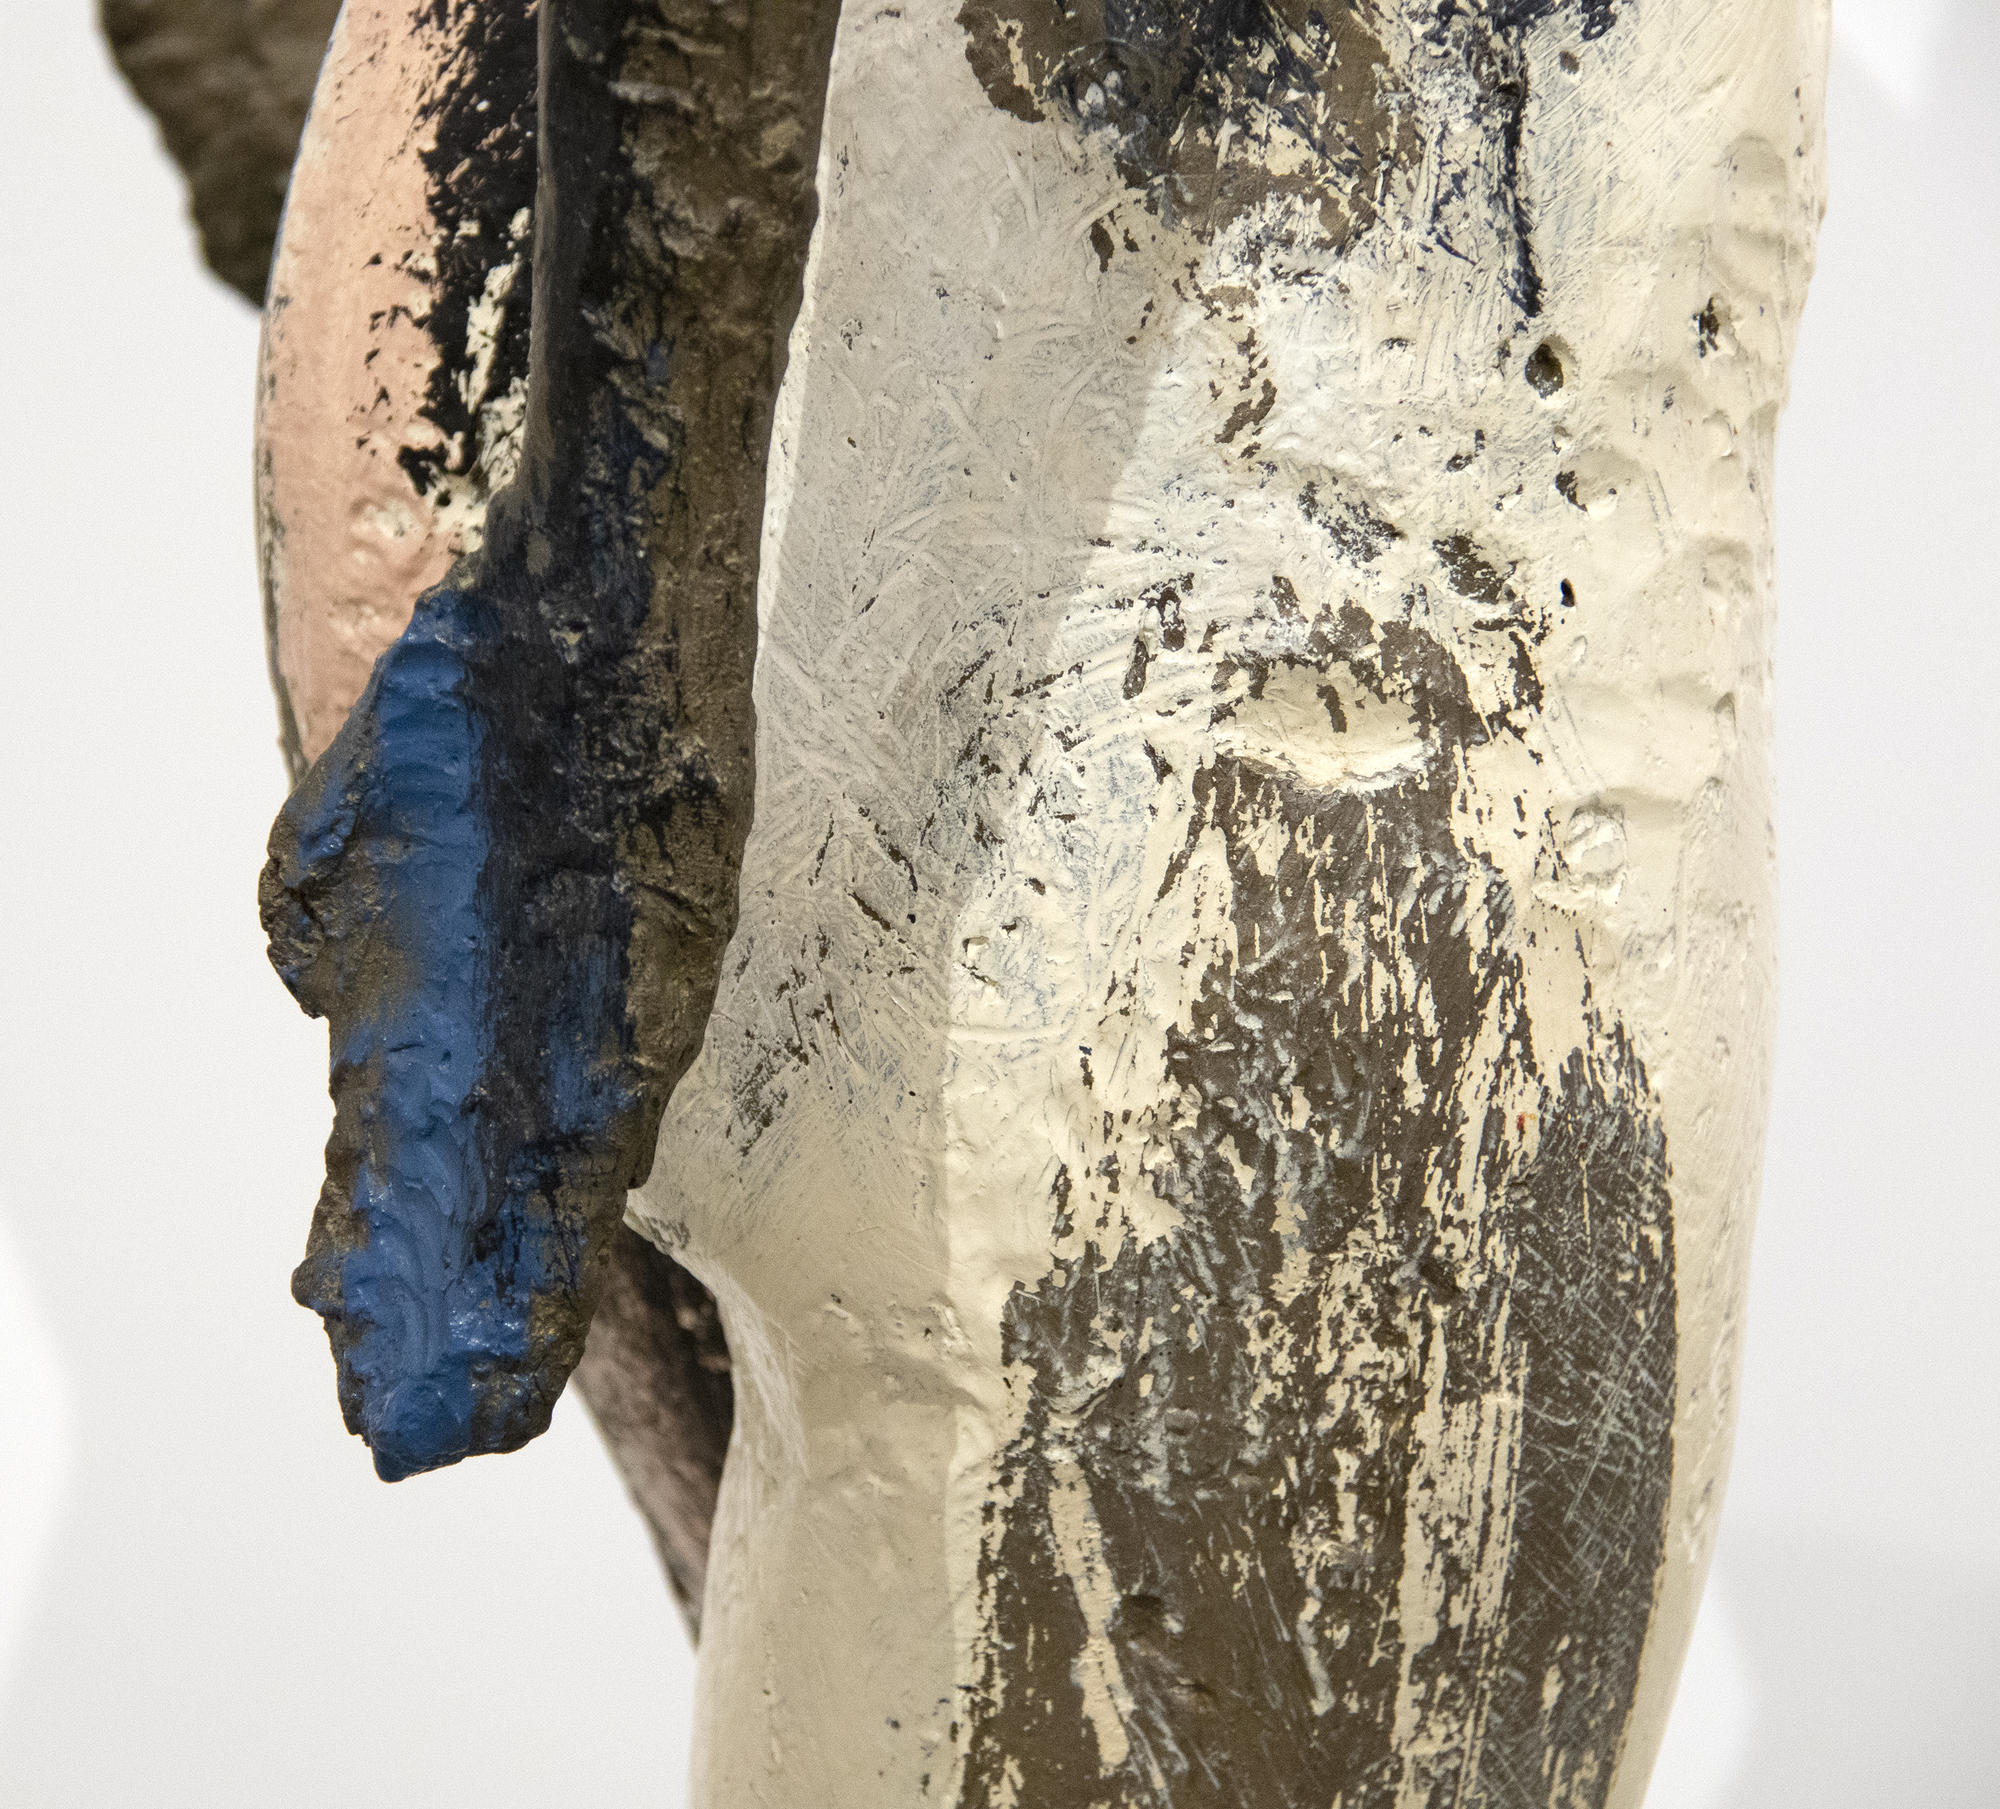 Manuel Neri war eine zentrale Figur in der figurativen Bewegung der Bay Area in den 1960er Jahren. Anstelle abstrakter Formen betonte die Gruppe die Emotionen durch die Kraft der menschlichen Form. Das vorliegende Werk, &quot;Ohne Titel&quot; (1982), erforscht die weibliche Form in Lebensgröße.  Neri zog es vor, während seiner 60-jährigen Karriere mit nur einem Modell zu arbeiten, Maria Julia Klimenko. Das Fehlen eines Gesichts in vielen seiner Skulpturen verleiht ihm ein Element des Geheimnisses und der Mehrdeutigkeit. Der Schwerpunkt der Komposition in &quot;Ohne Titel&quot; liegt auf der Struktur und Form der Figur.  Manuel Neri ist in zahlreichen Museumssammlungen weltweit vertreten, darunter die Addison Gallery/Phillips Academy, die Anderson Collection der Stanford University, das Art Institute of Chicago, das Cantor Arts Center der Stanford University, das Cincinnati Art Museum, das Crocker Art Museum, Sacramento, CA, das Denver Art Museum, das El Paso Museum of Art, Texas, die Fine Arts Museums of San Francisco, die Harvard University Art Museums, das Hirshhorn Museum and Sculpture Garden, Washington, D.C.; Honolulu Museum of Art, The Metropolitan Museum of Art, New York und die National Gallery of Art, Washington, DC.